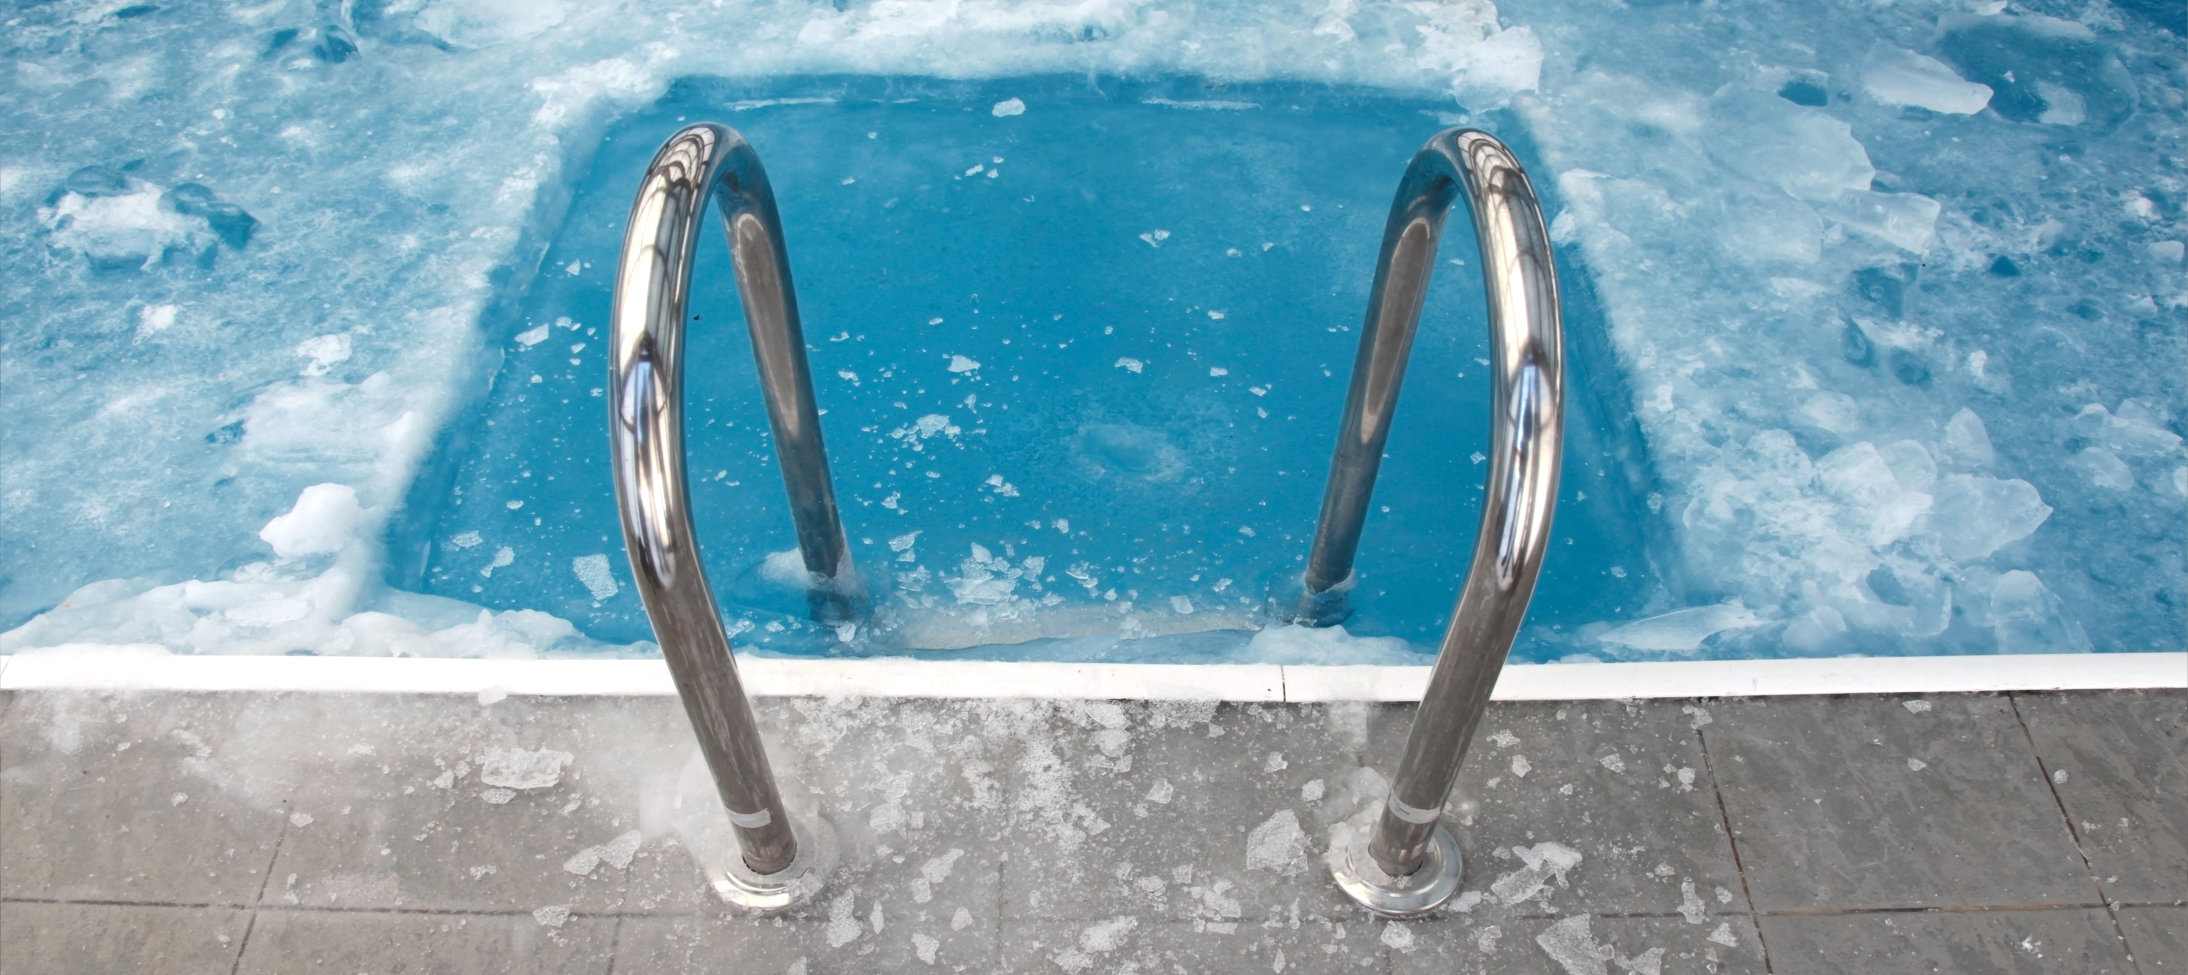 4 Dicas para manter as vendas da sua loja de piscinas no inverno